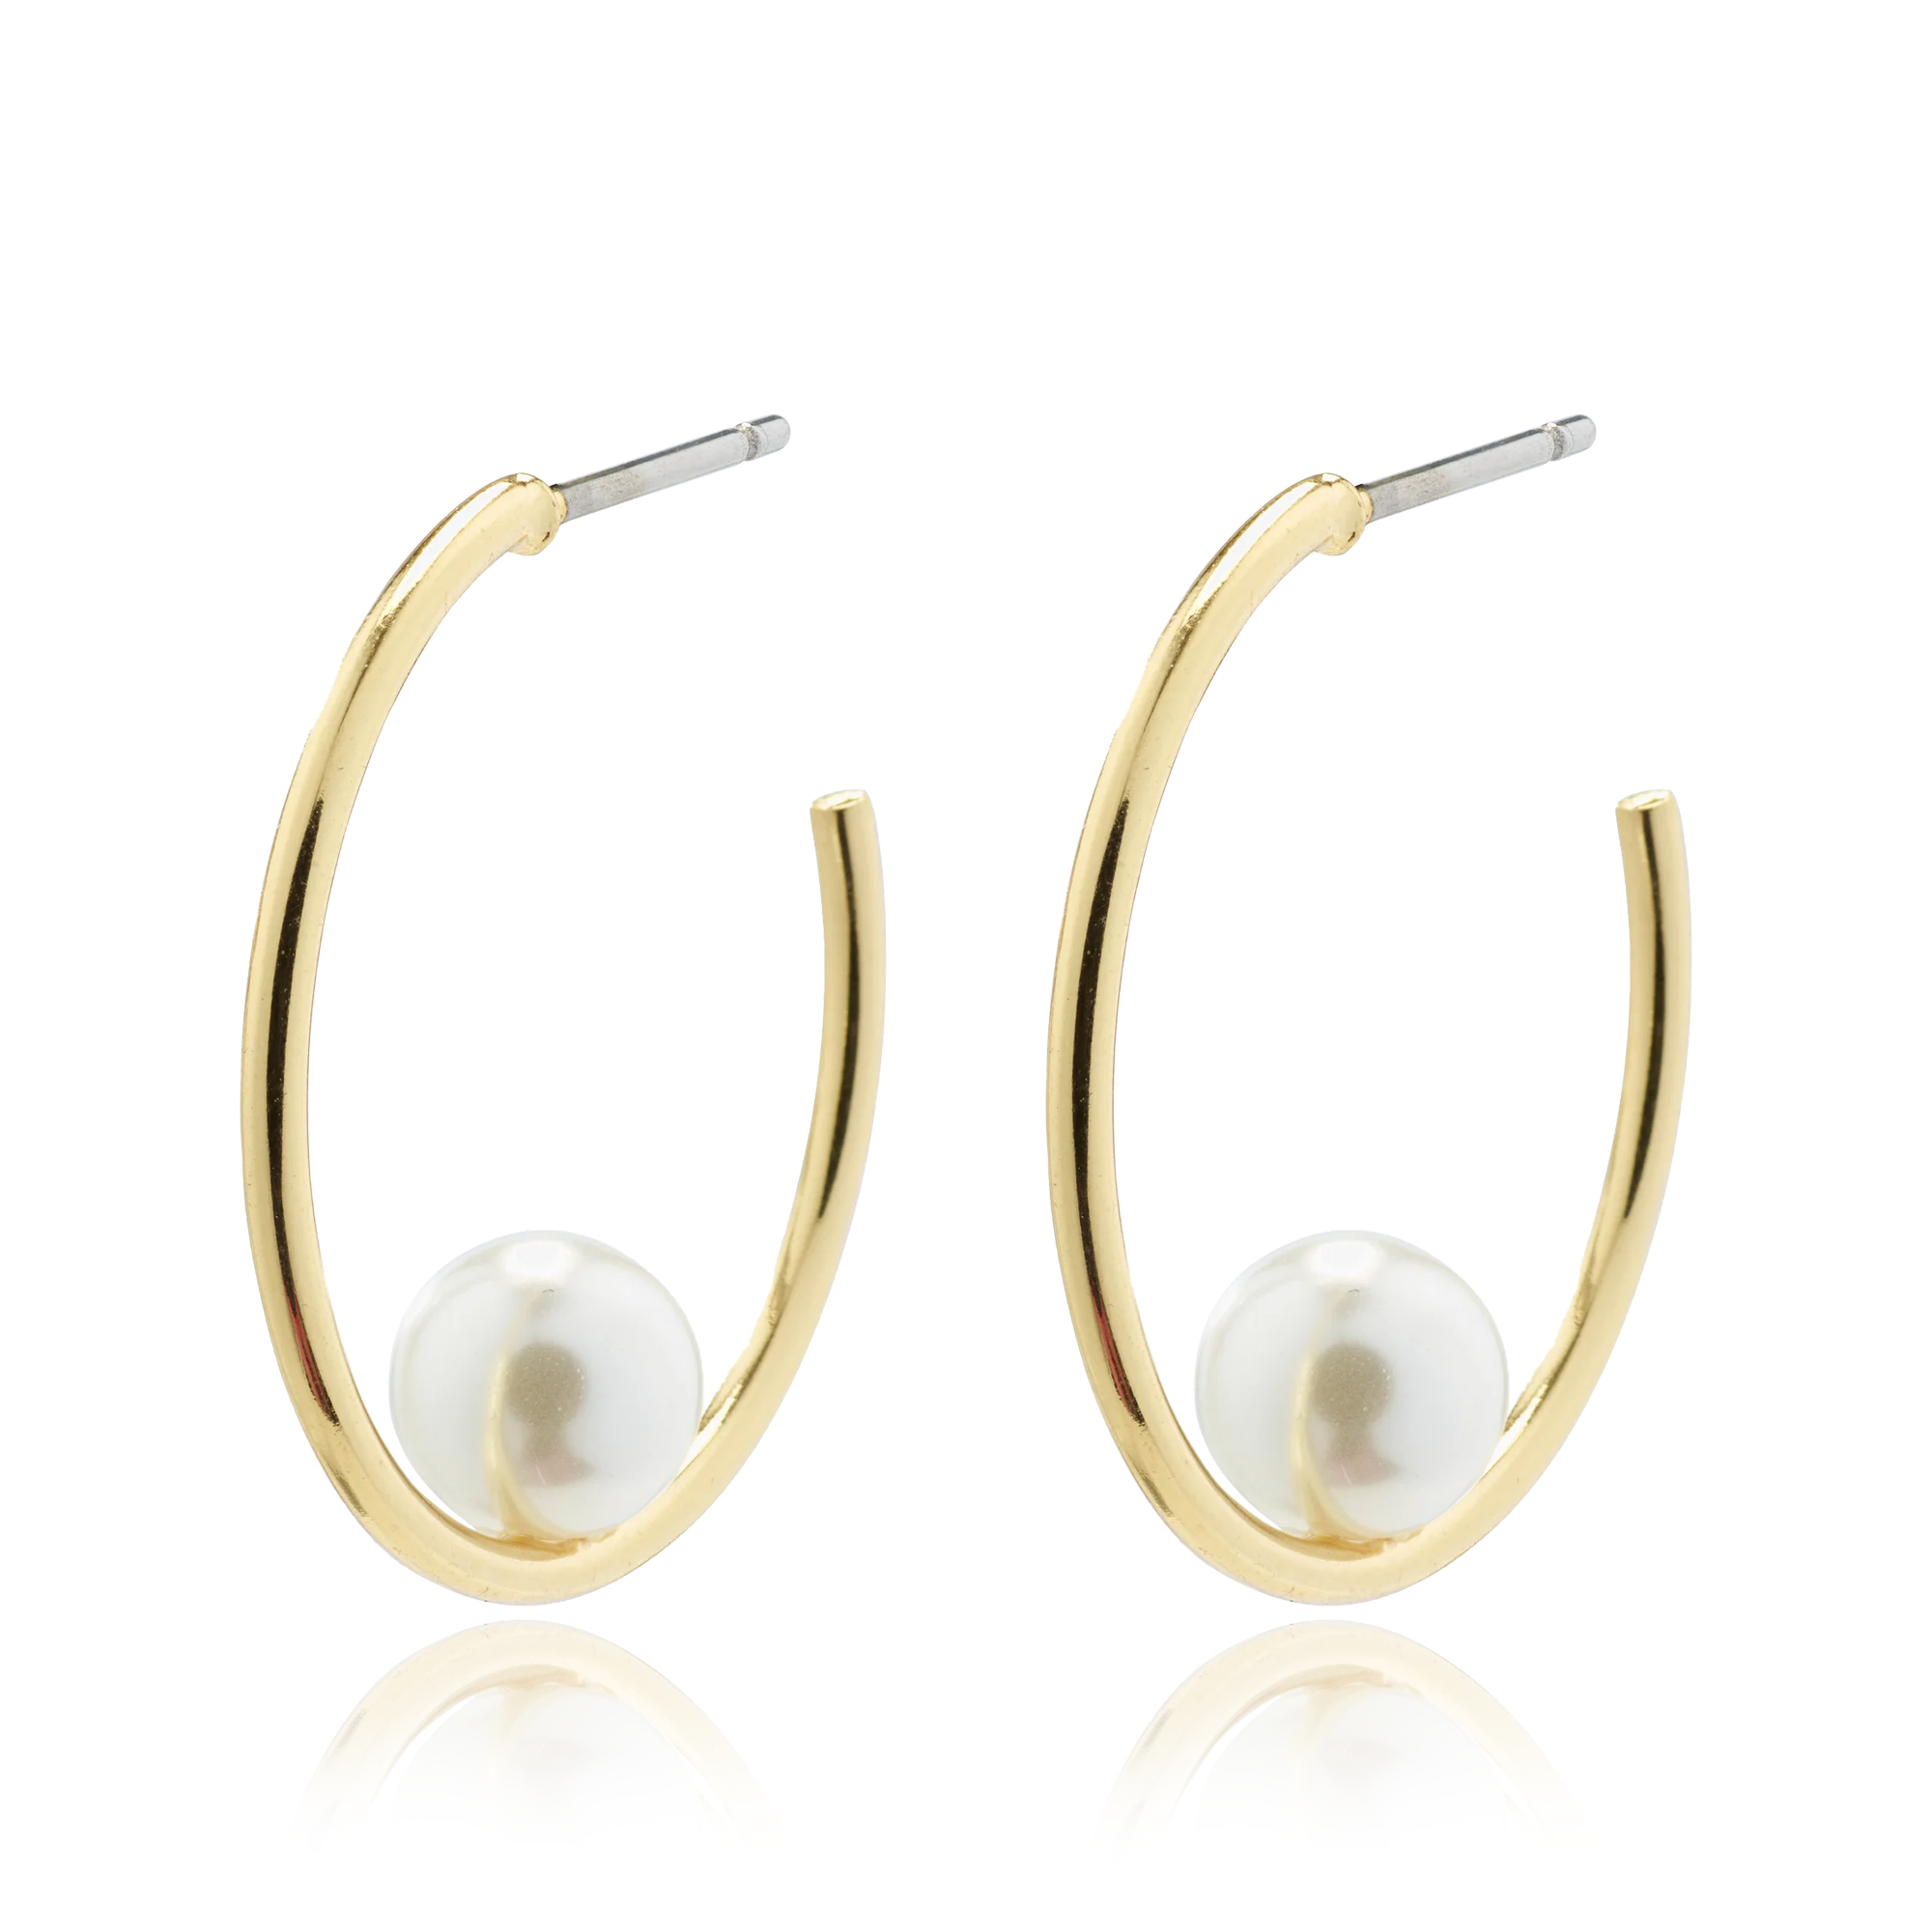 The "Pearl" Earrings